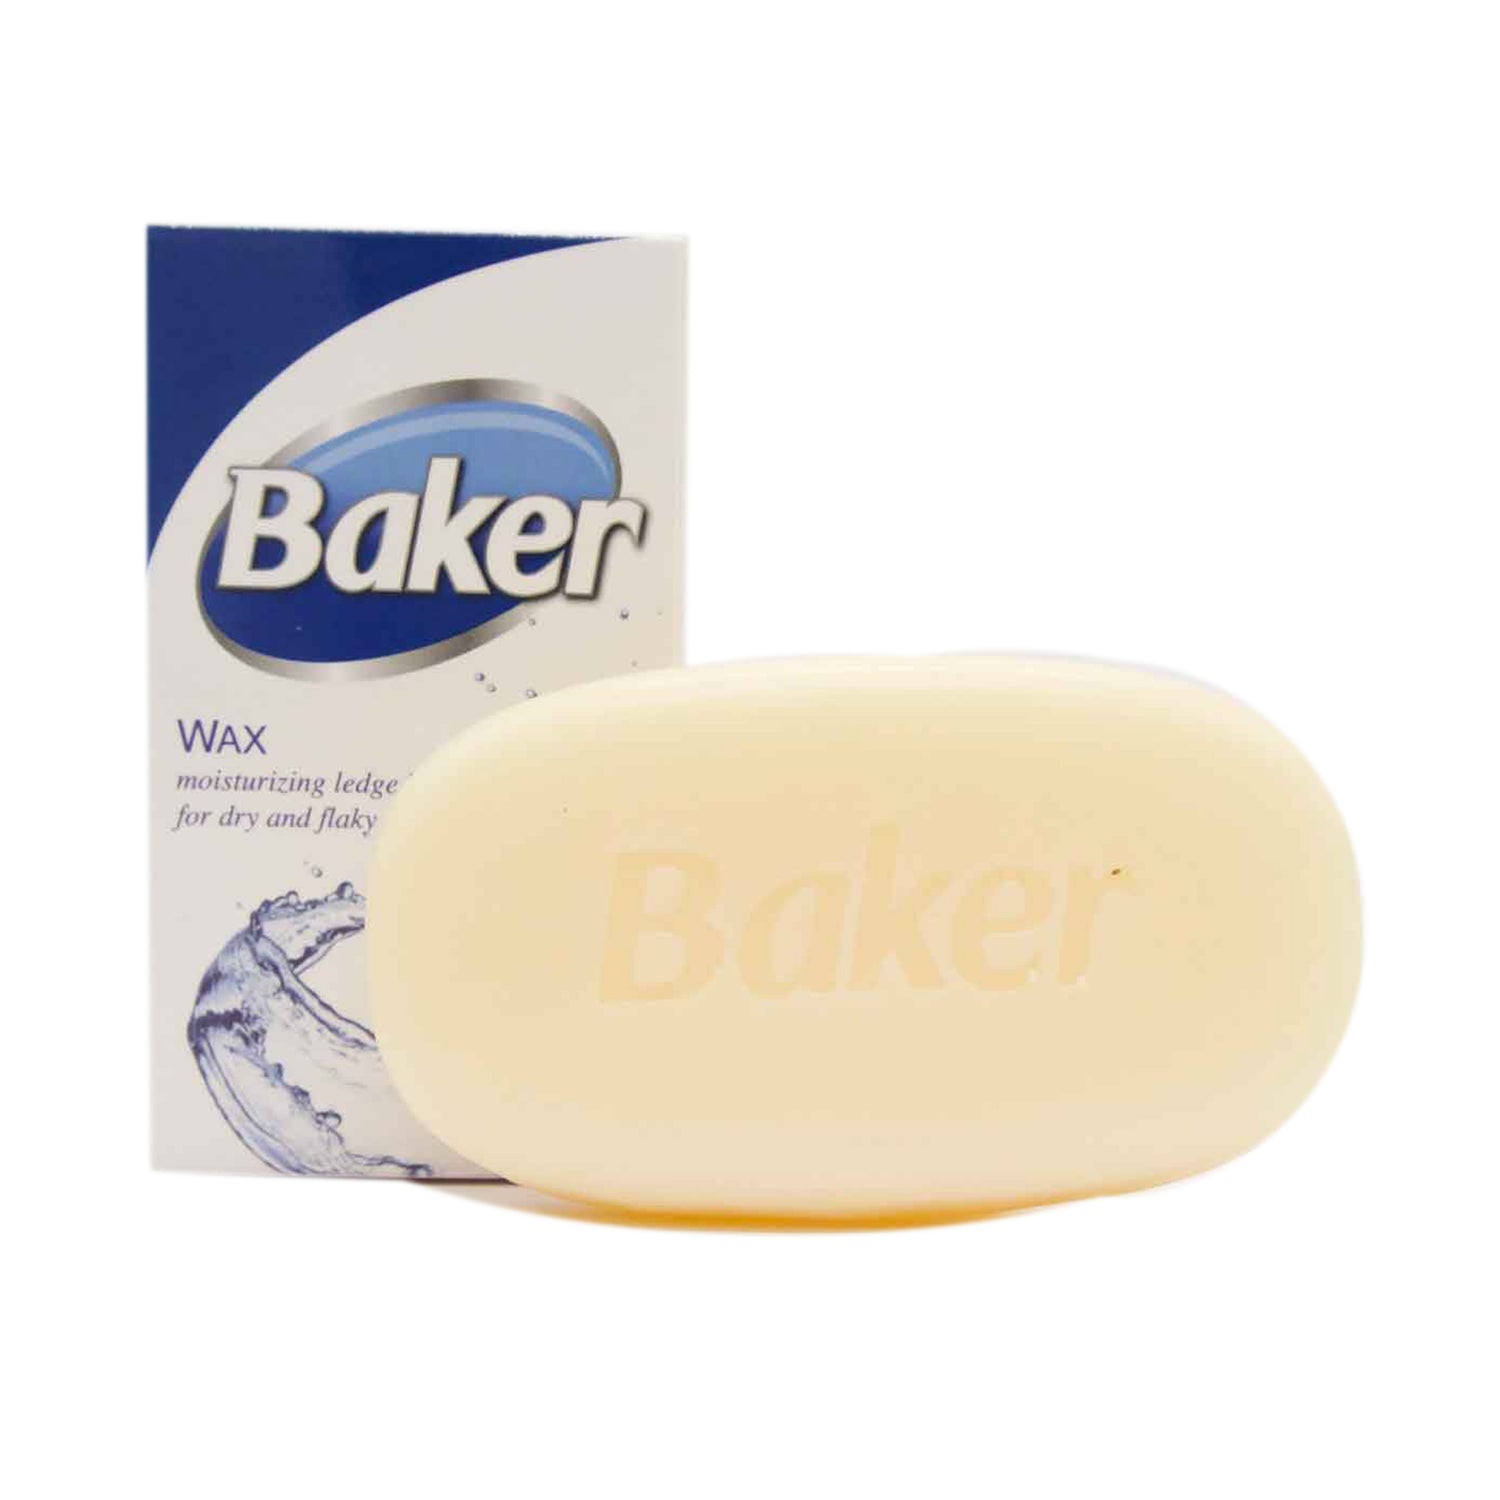 Baker Wax - Baker Fresh